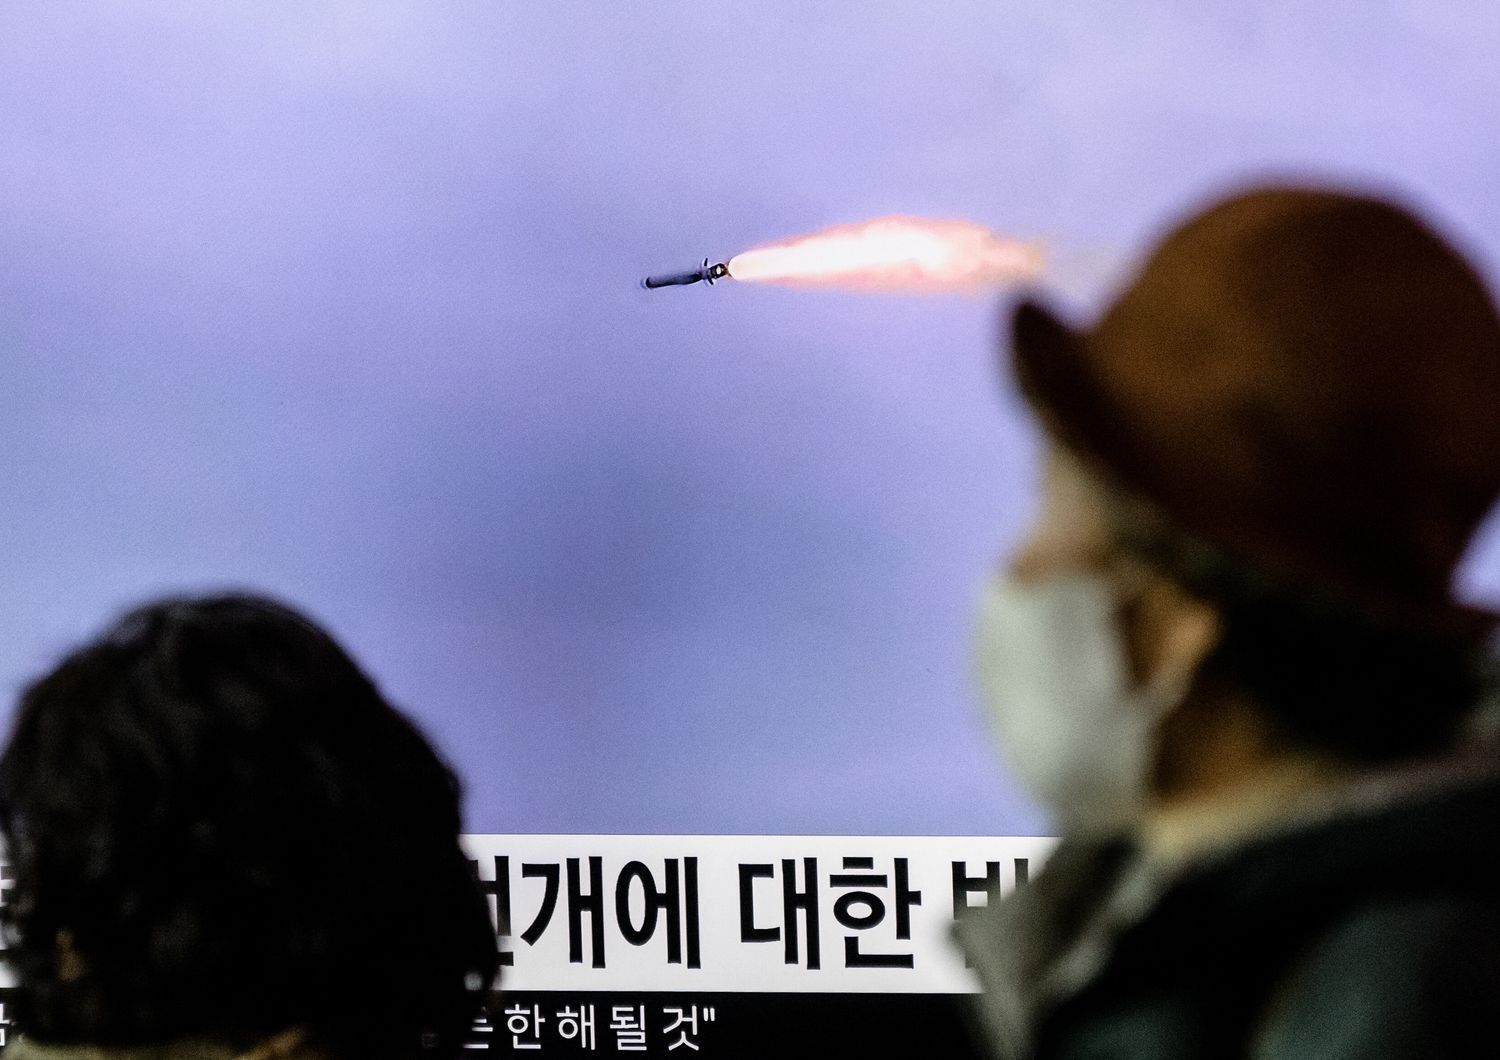 lancio missile balistico corea nord